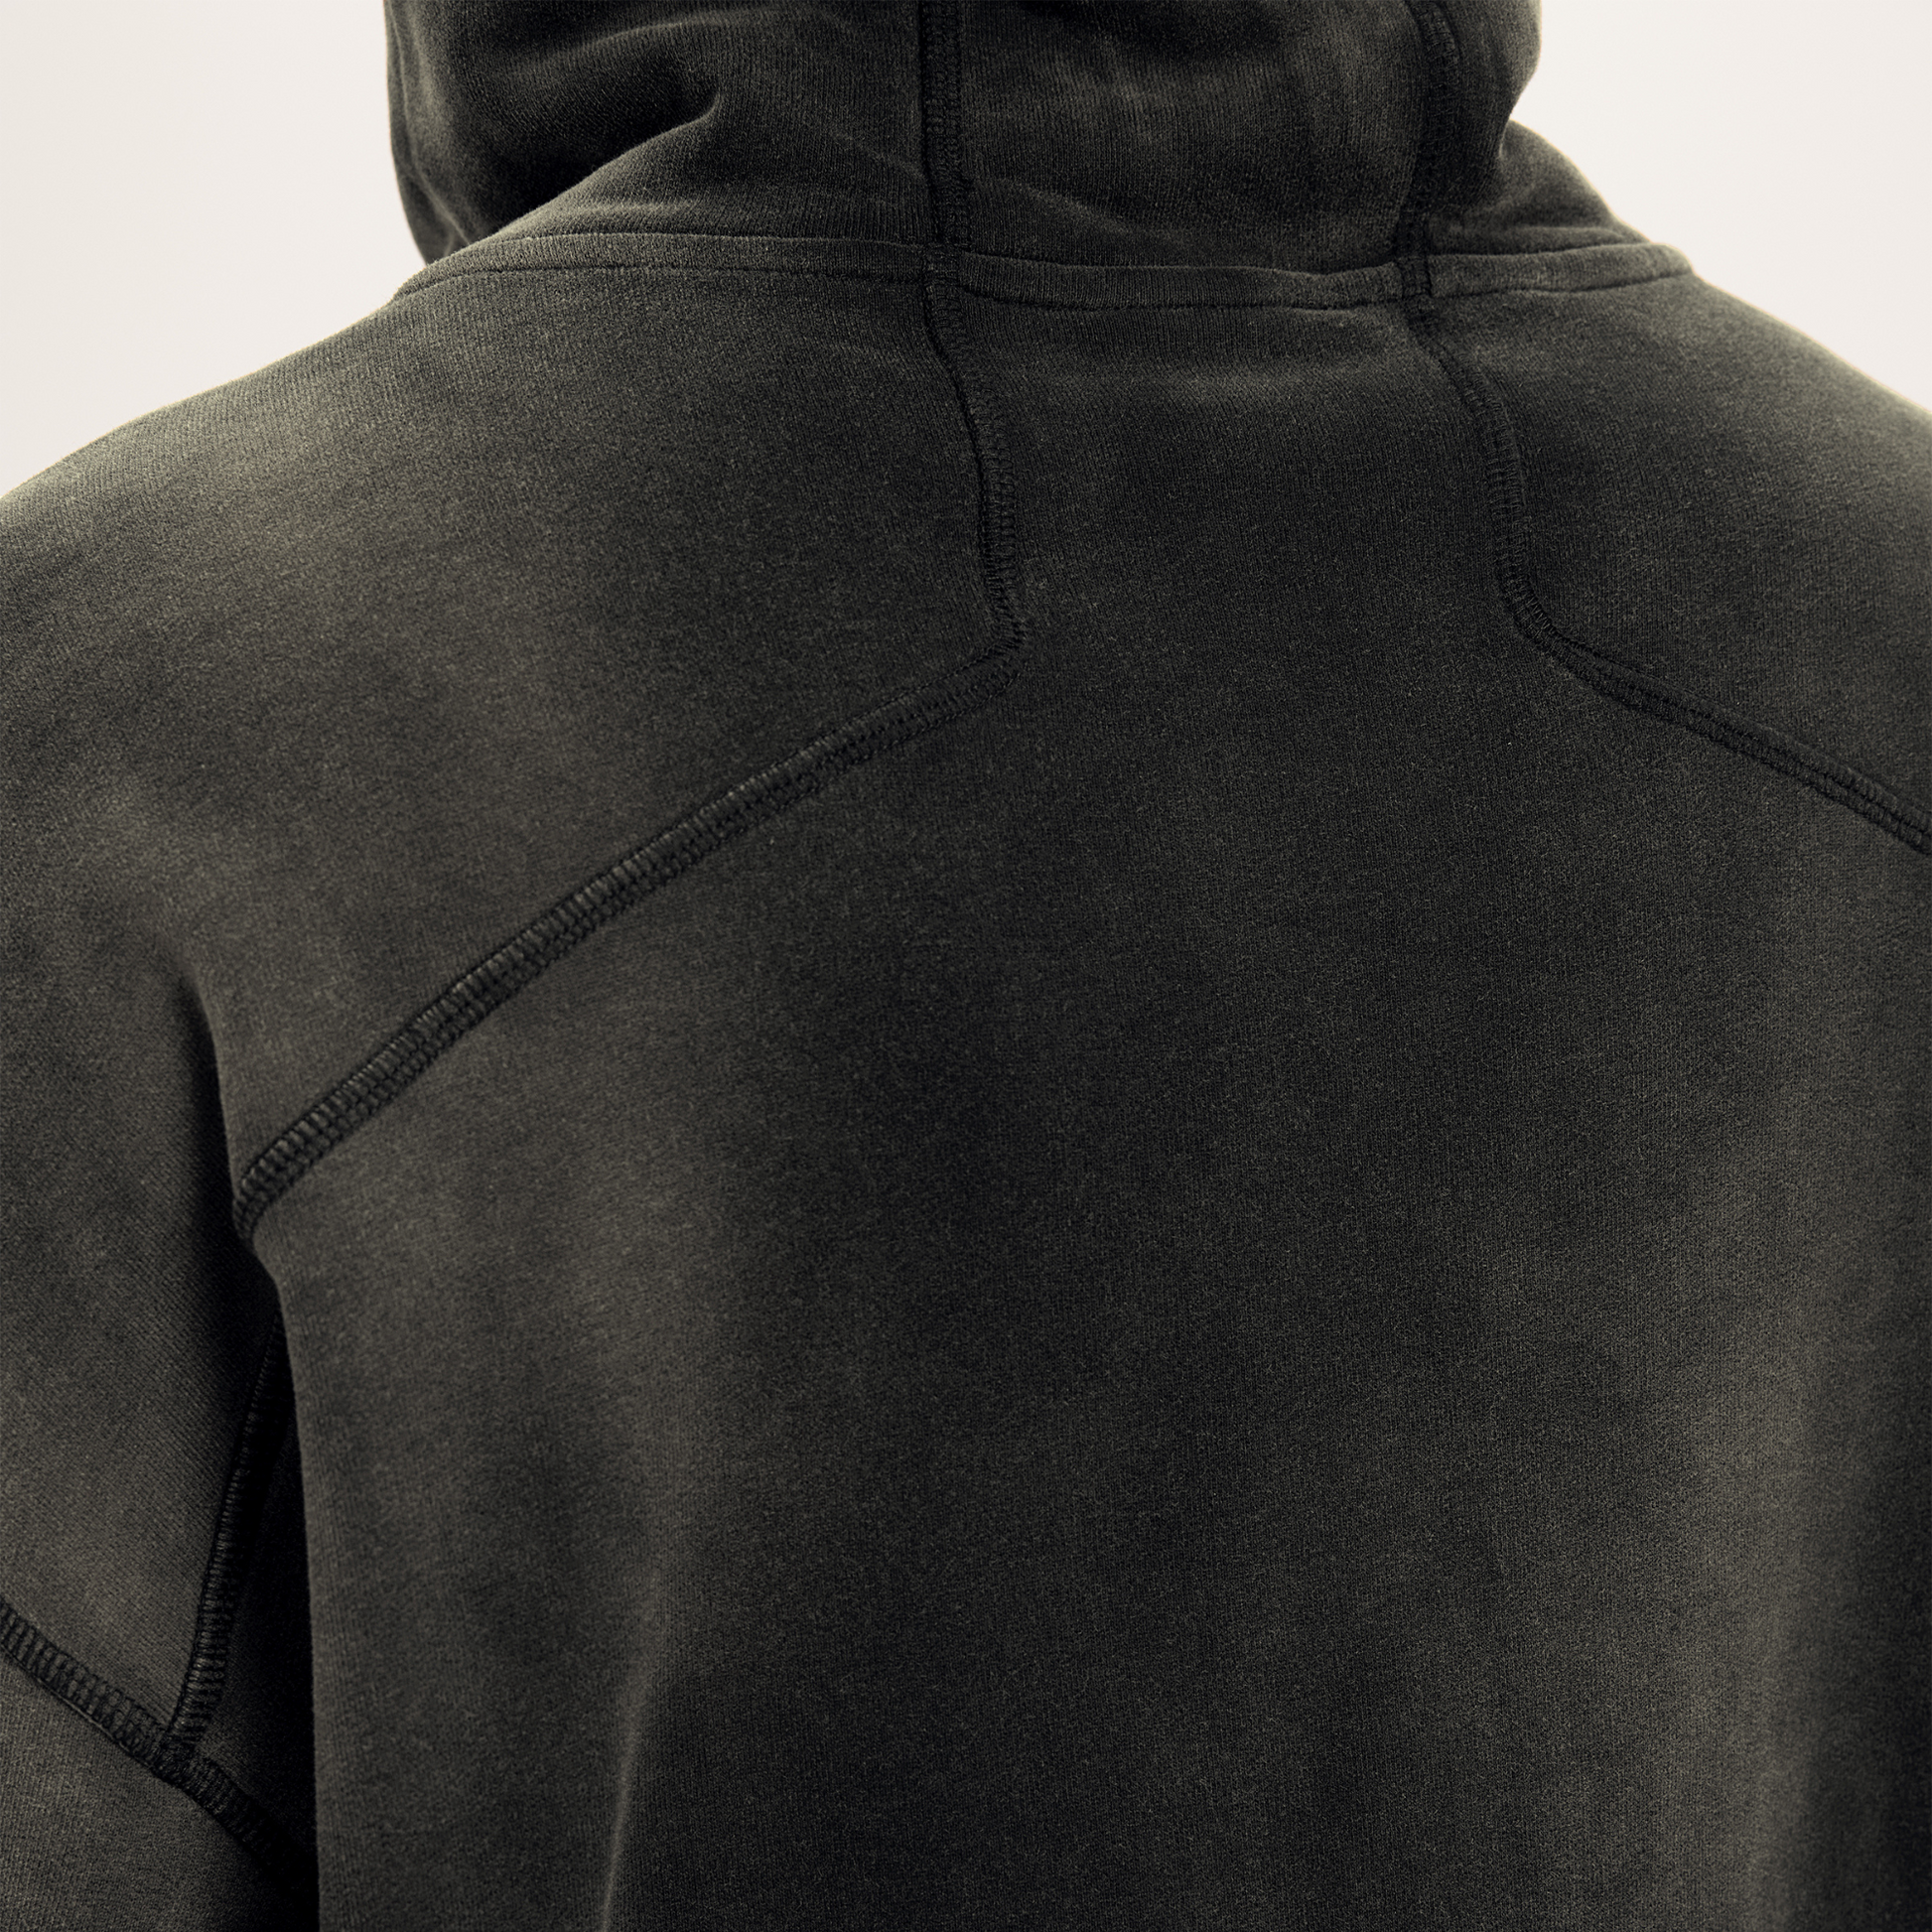 back side of black hoodie from streetwear hoodies in washed black